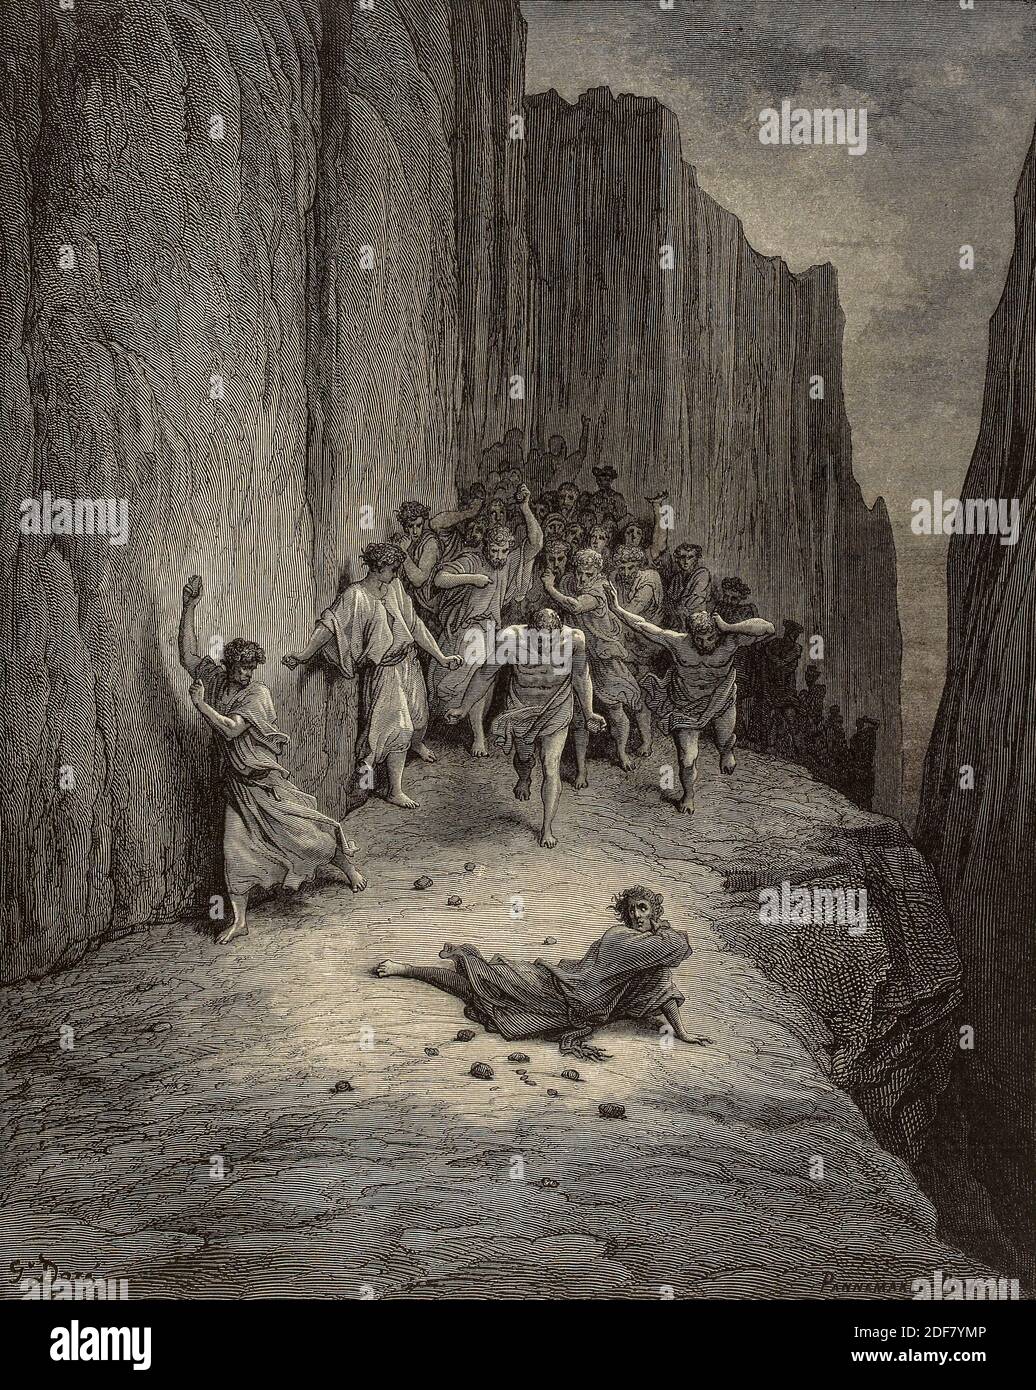 Dante - Divina Commedia - Purgatorio - Ilustración de Gustave Dorè - Canto XV - otro sueño de Dante Foto de stock